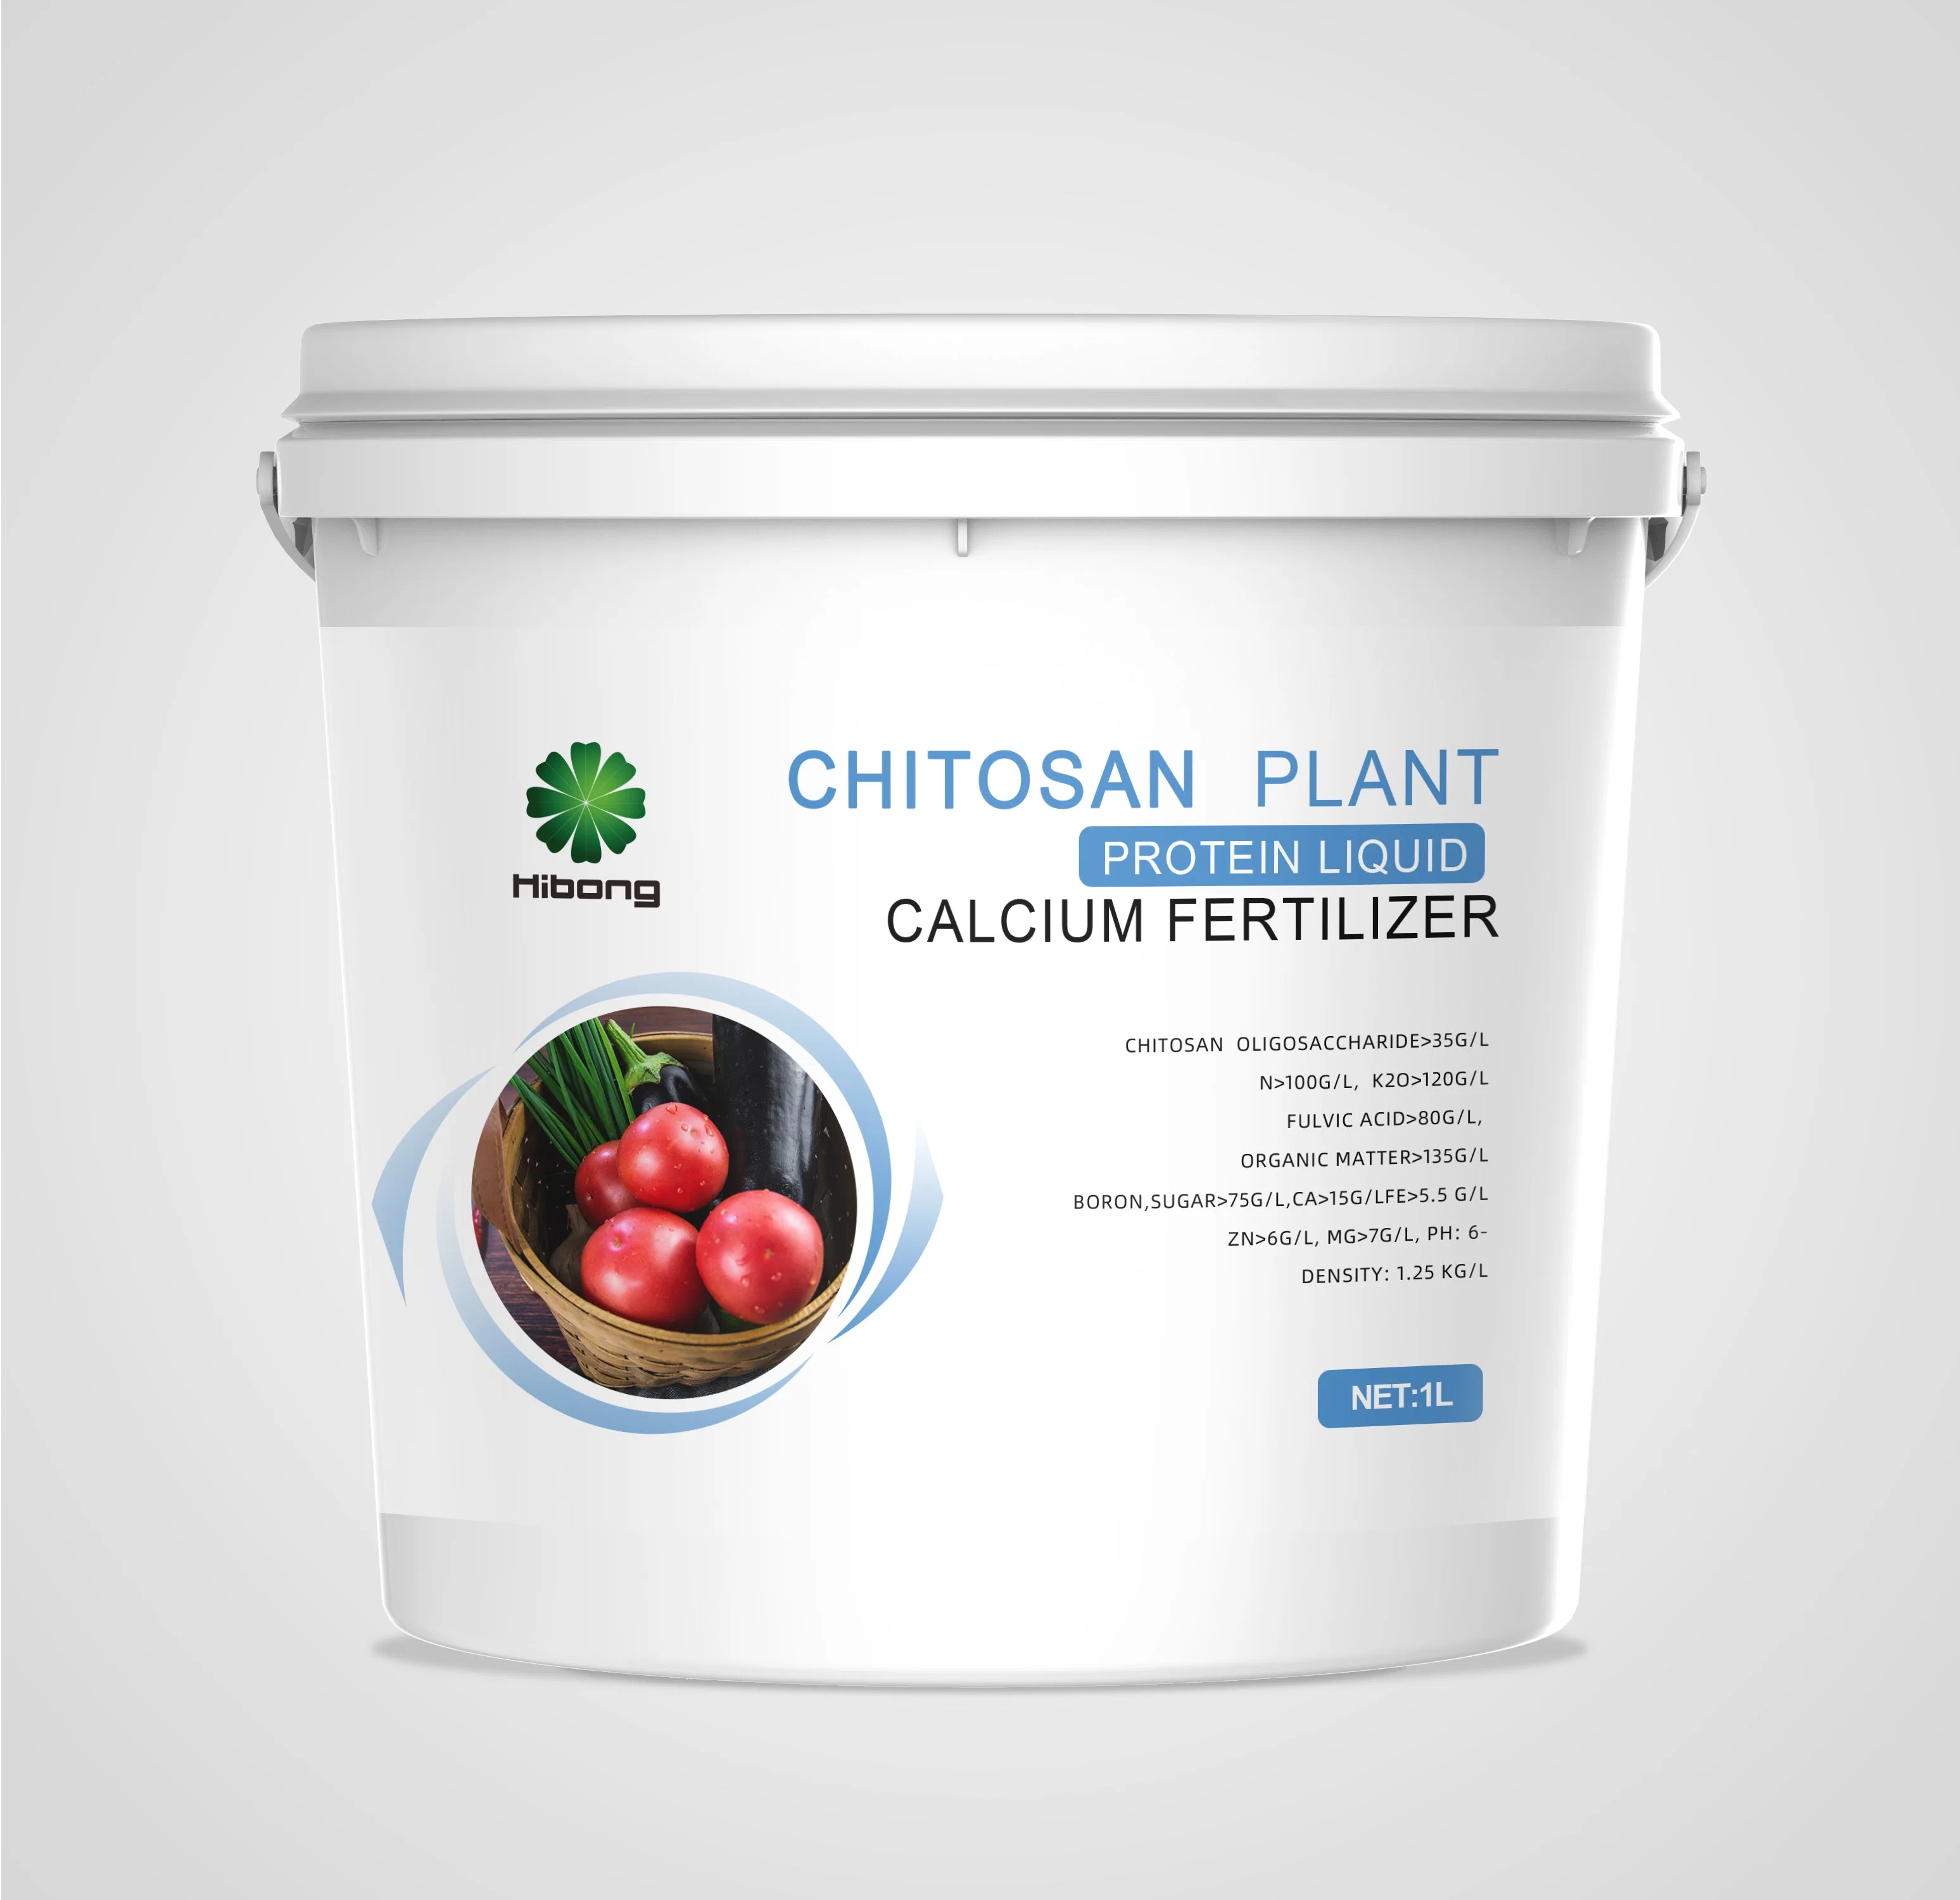 Le chitosan engrais fonctionnelle de l'enracinement des protéines végétales